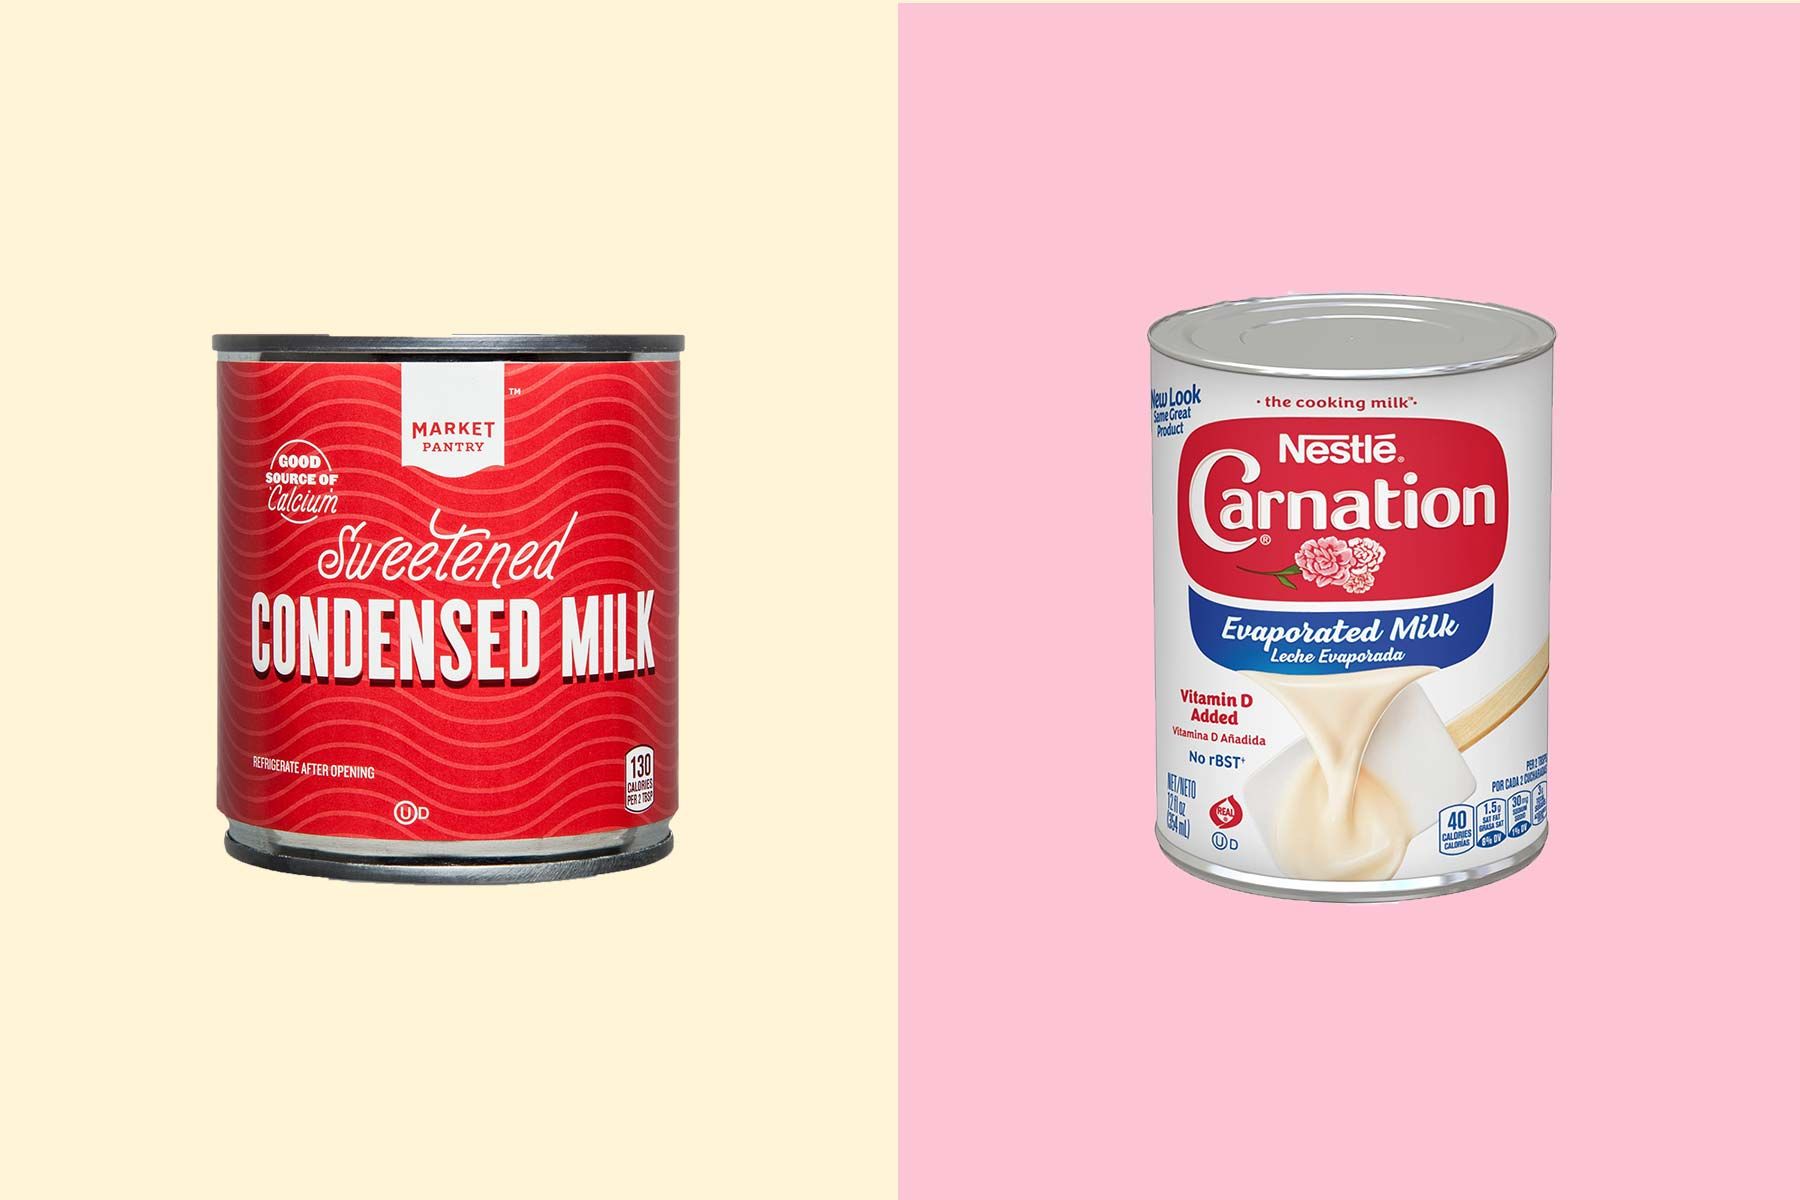 აორთქლებული რძე შედედებული რძის წინააღმდეგ: რა განსხვავებაა?